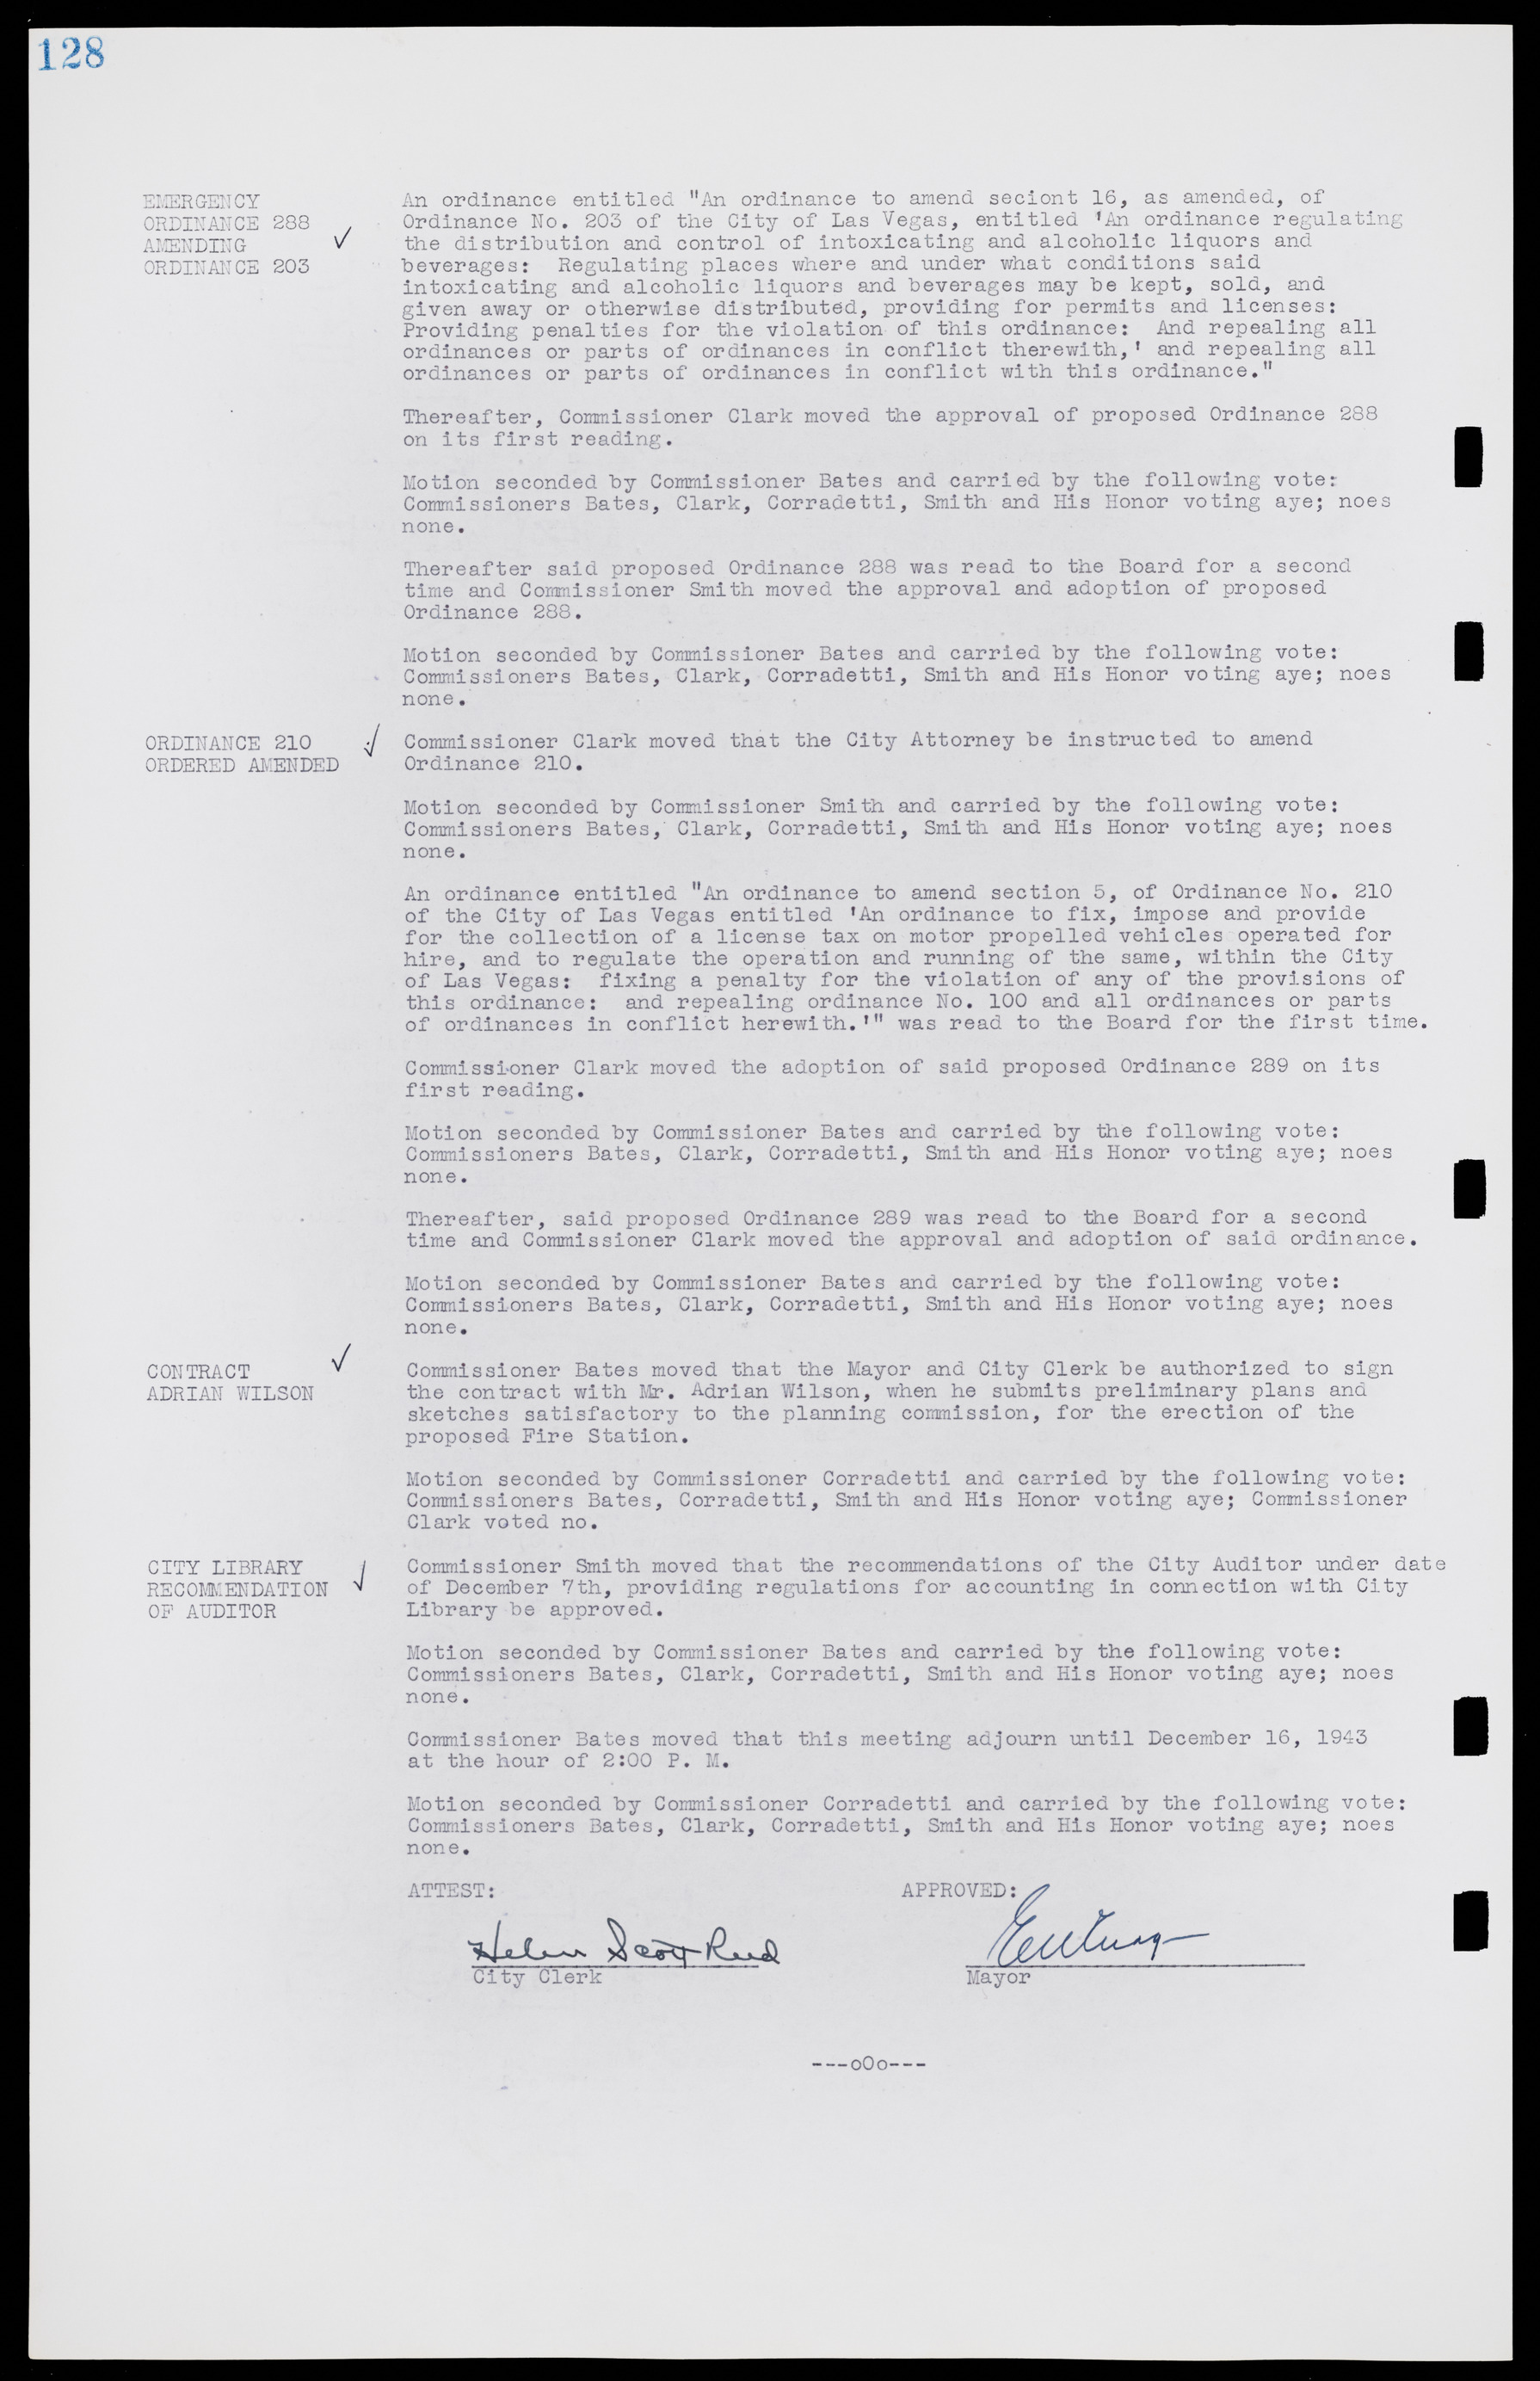 Las Vegas City Commission Minutes, August 11, 1942 to December 30, 1946, lvc000005-142